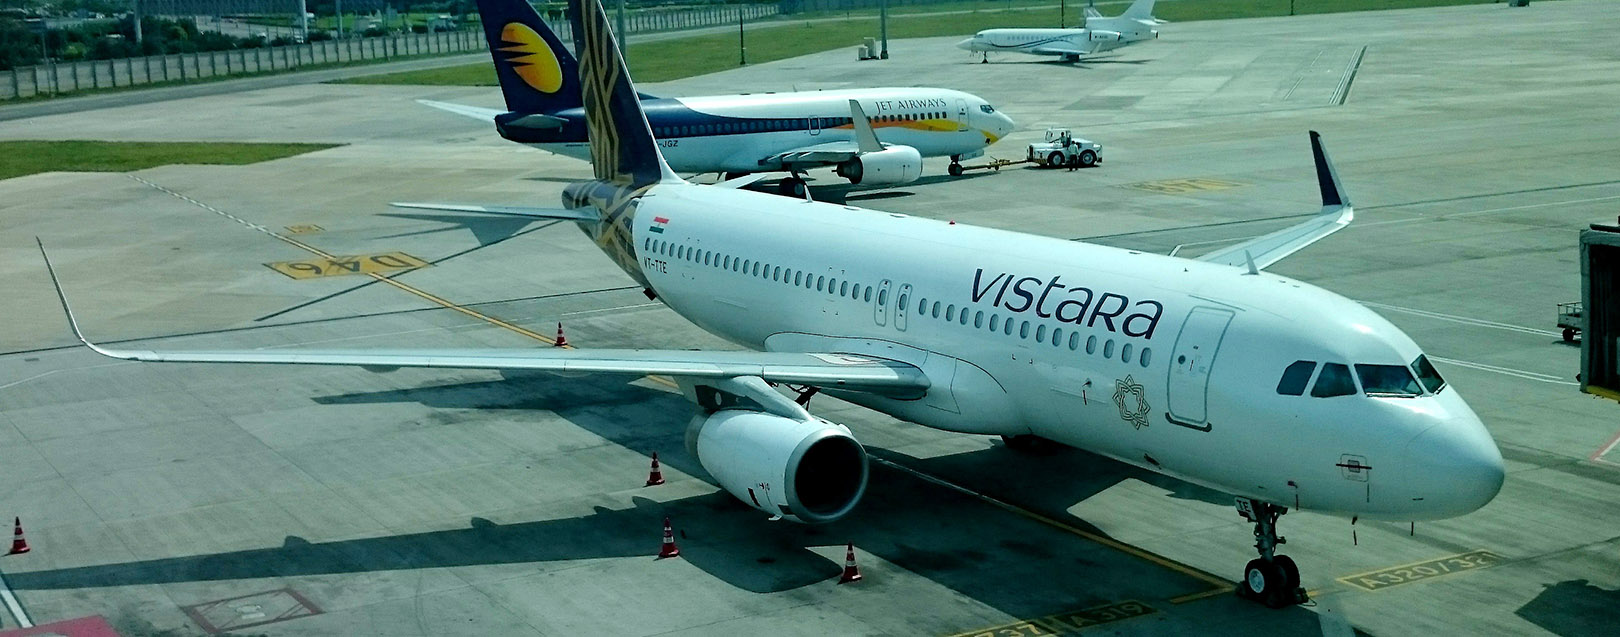 Vistara to operate 530 flights per week by year end